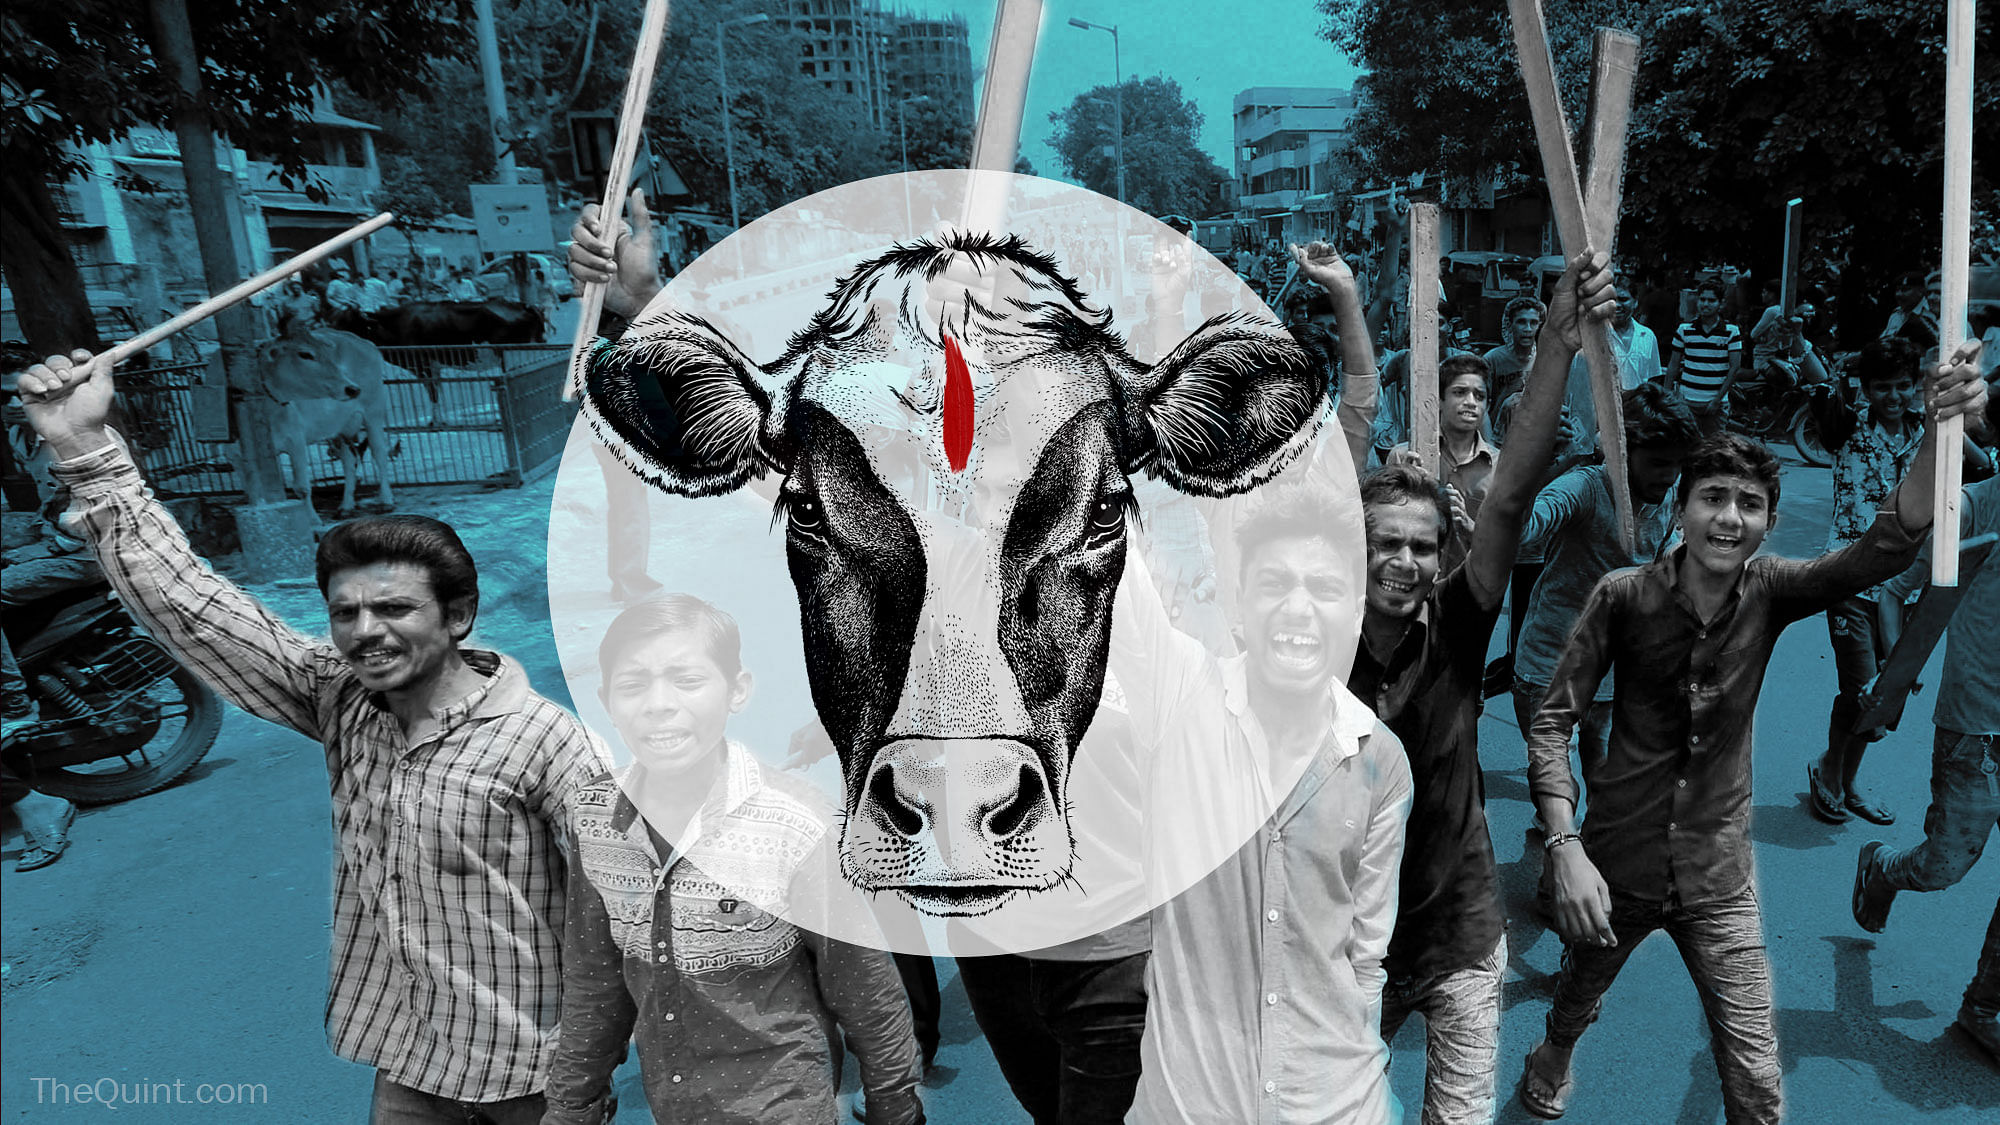 The spectre of cow vigilantism continues to grow, as gau rakshaks continue to persecute minorities with impunity.